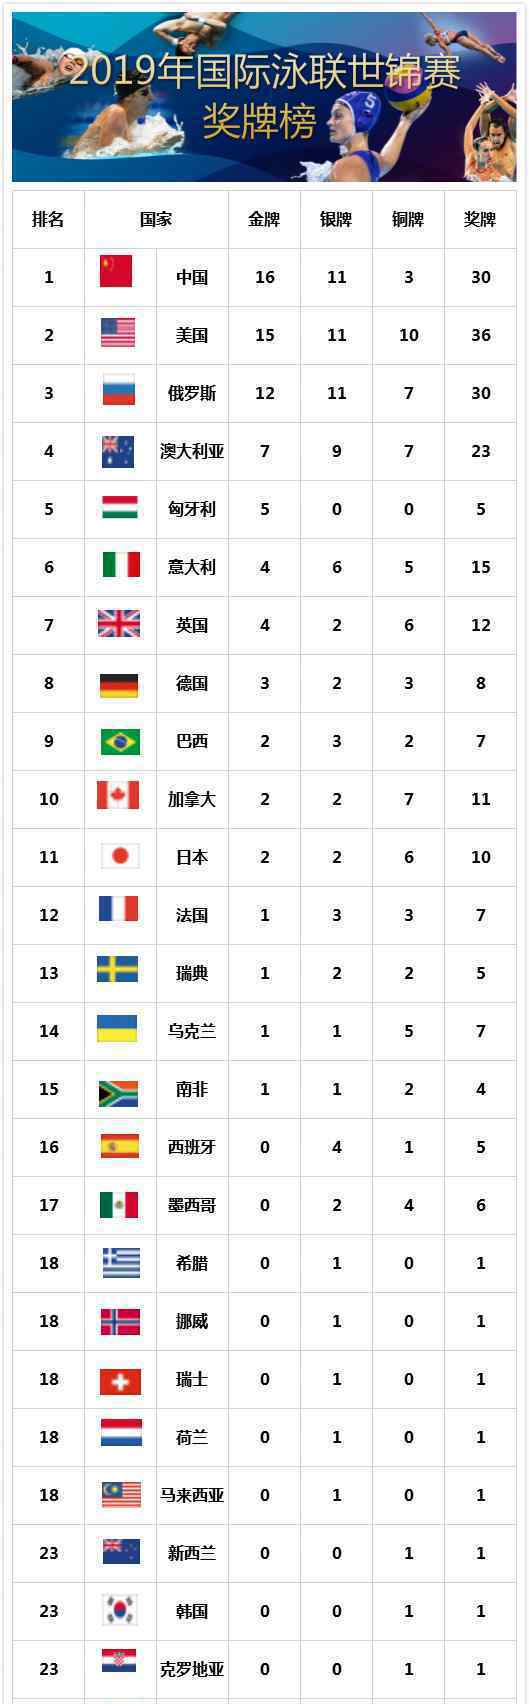 世锦赛中国金牌榜 中国队金牌榜第一多少金牌